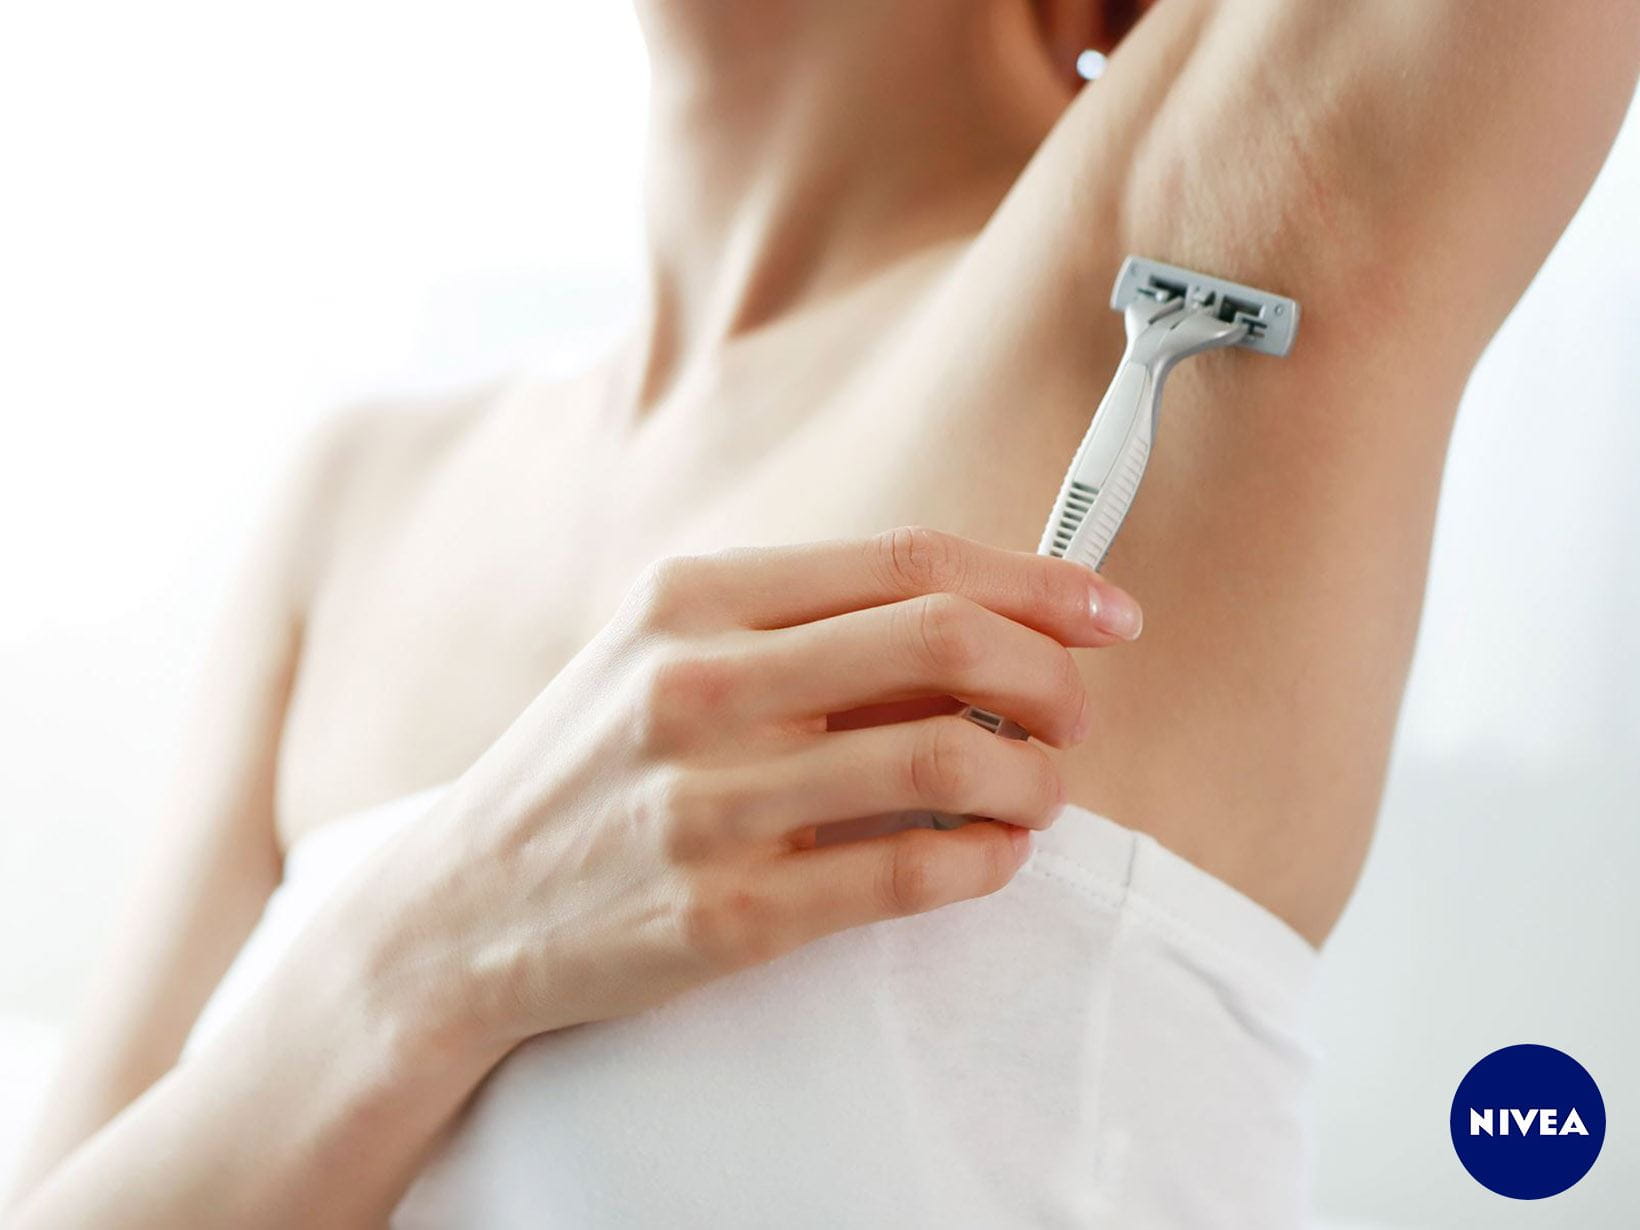 Beine und Achseln richtig rasieren Tipps für glatte Haut NIVEA